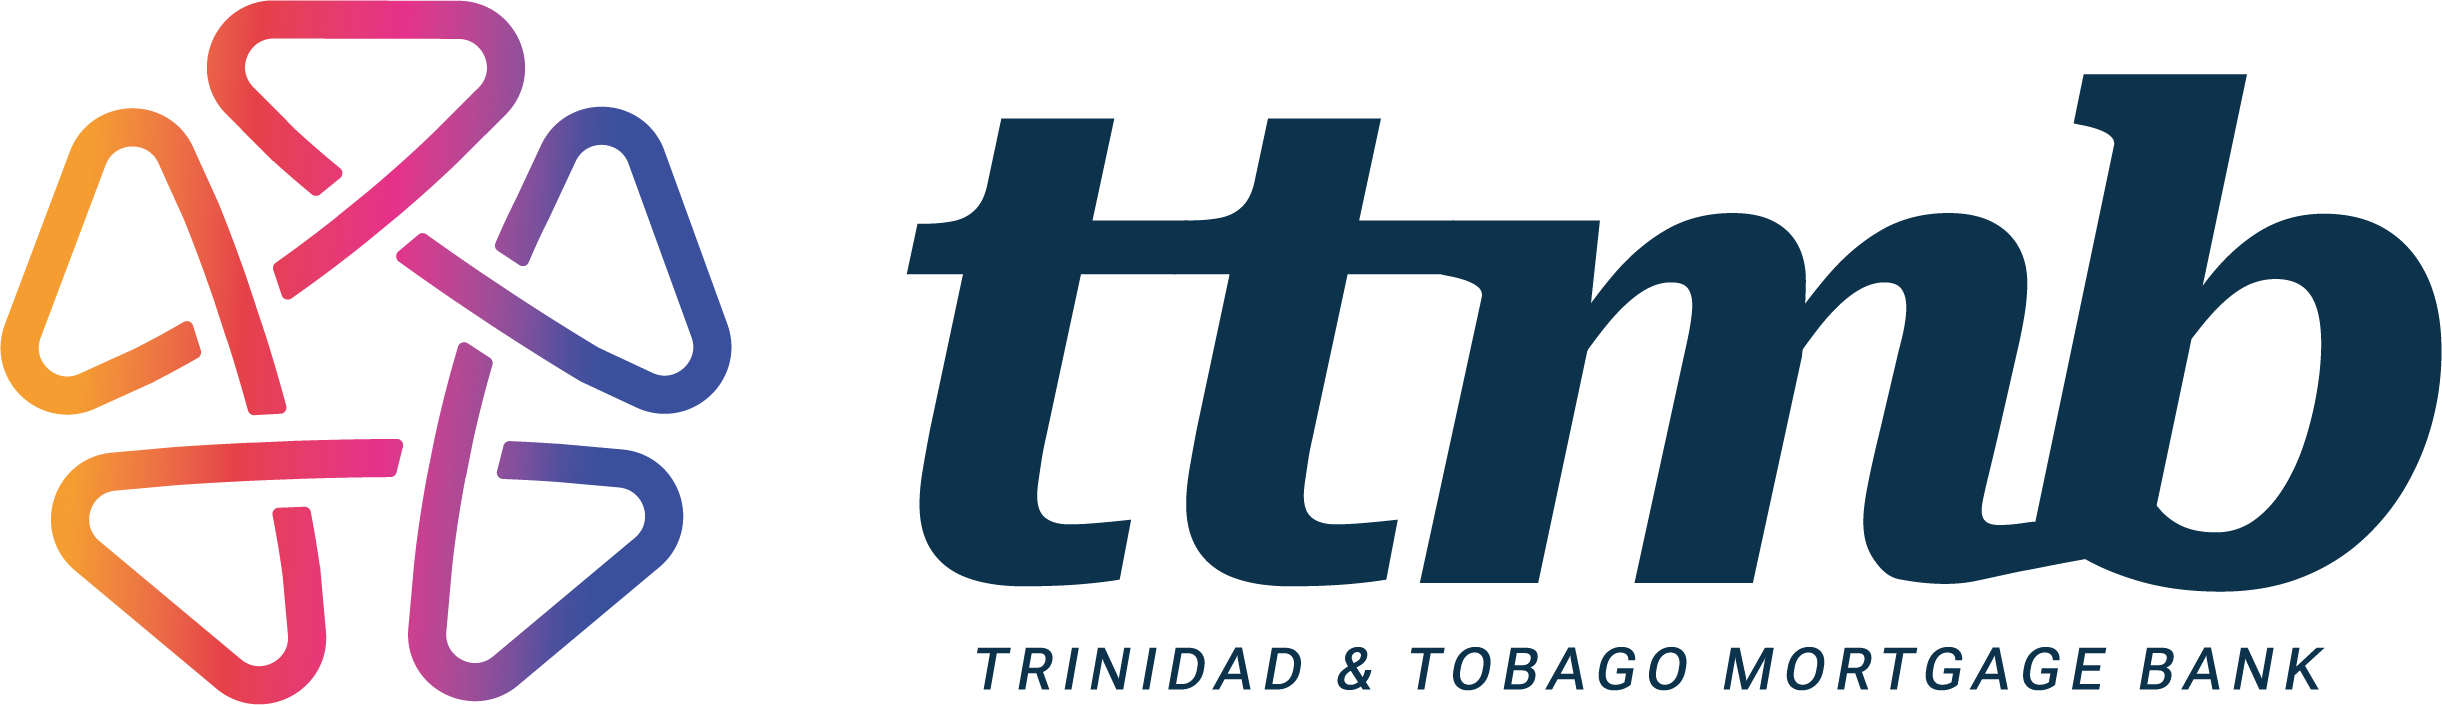 Trinidad & Tobago Mortgage Bank